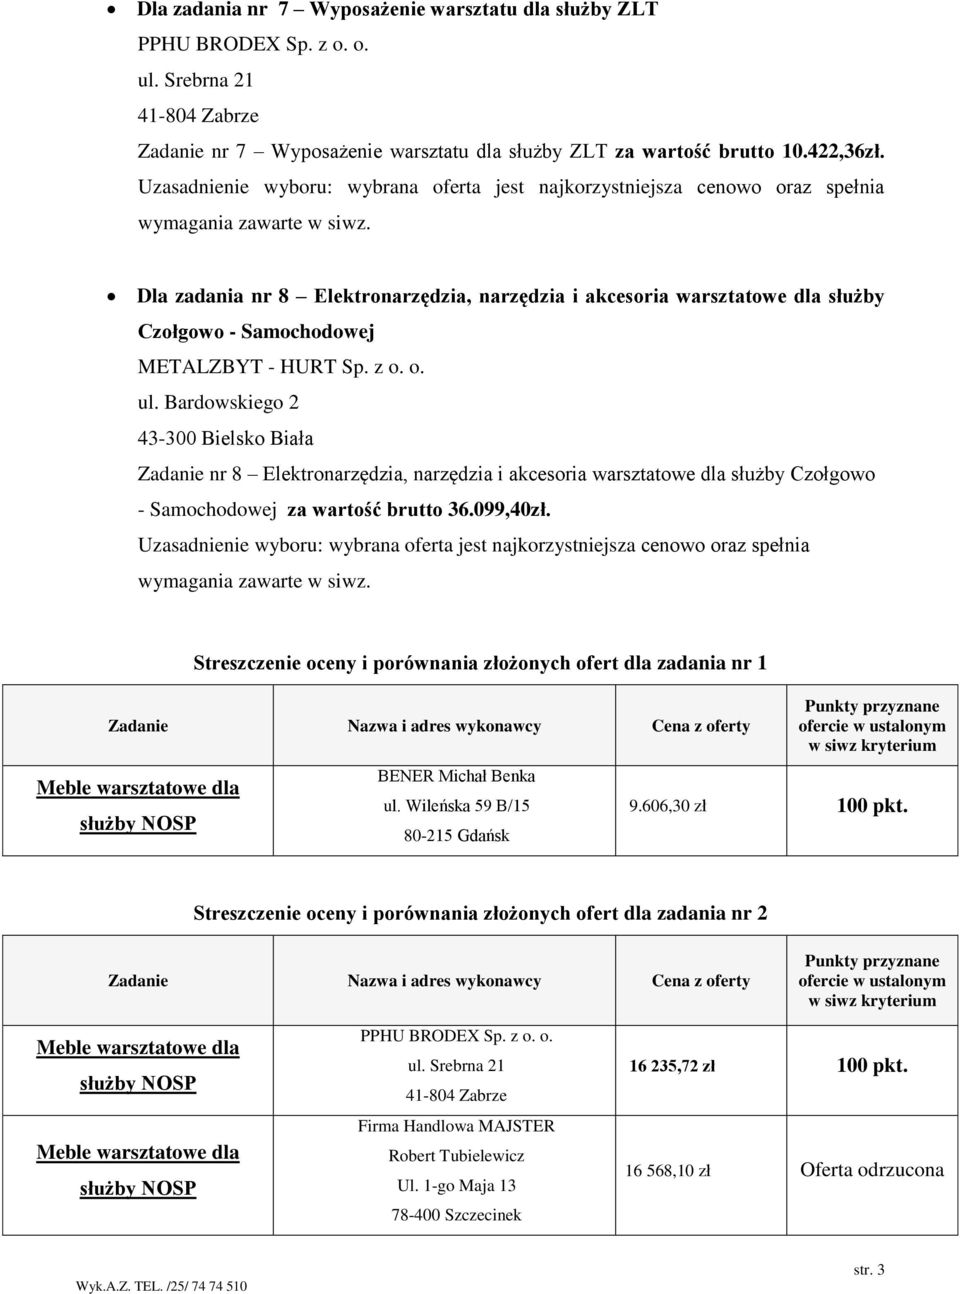 Streszczenie oceny i porównania złożonych ofert dla zadania nr 1 Meble warsztatowe dla służby NOSP BENER Michał Benka ul. Wileńska 59 B/15 80-215 Gdańsk 9.606,30 zł 100 pkt.